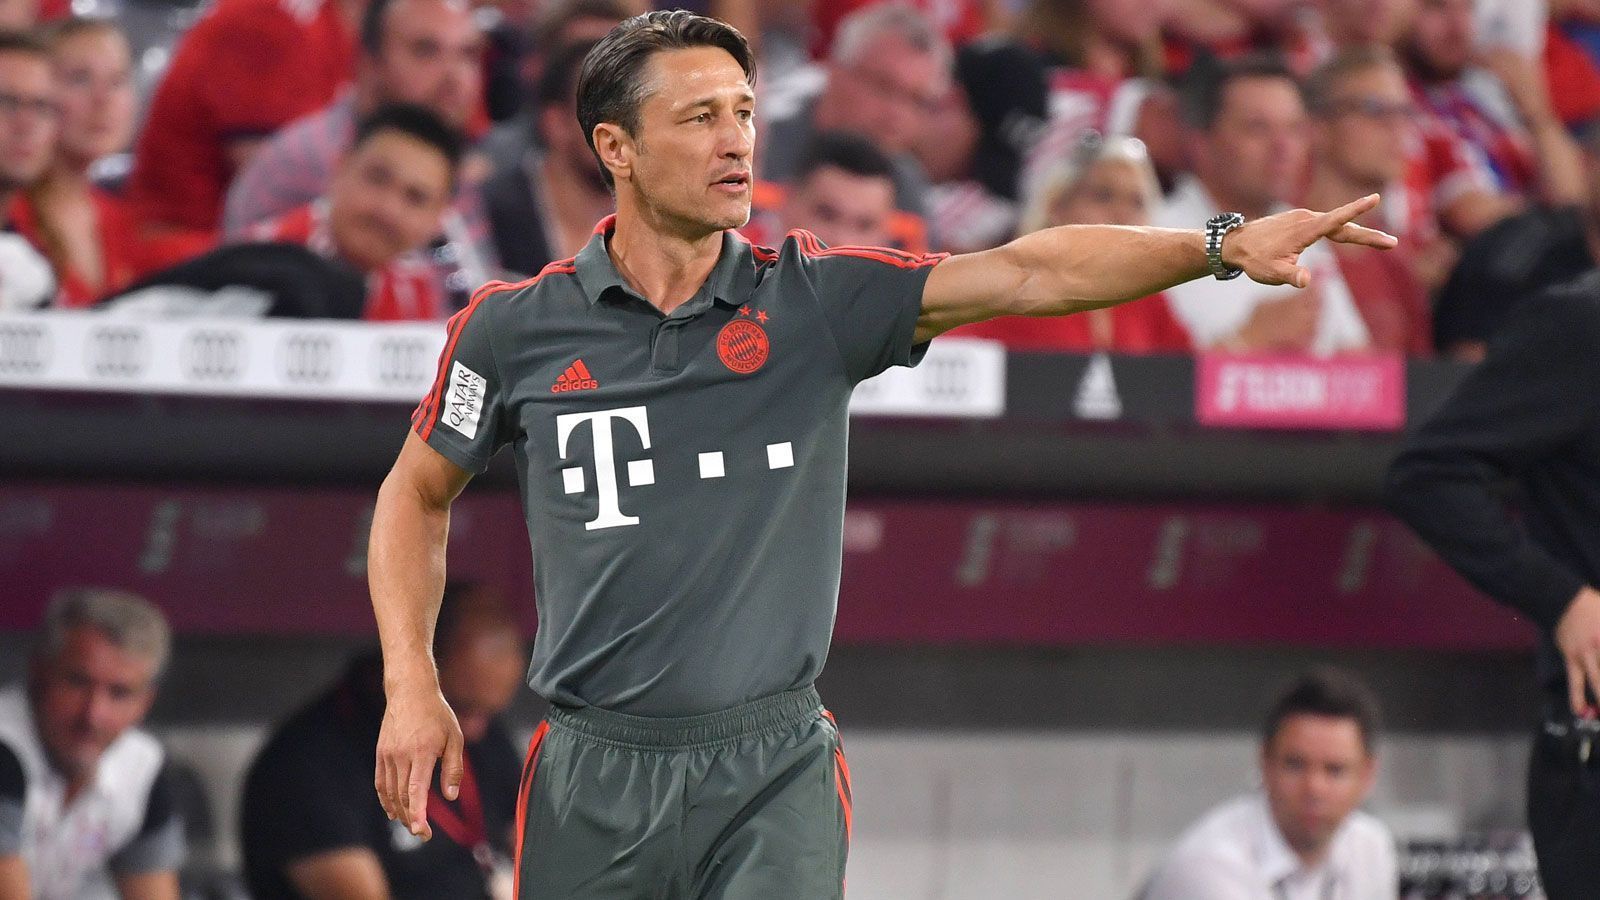 
                <strong>FC Bayern München - Niko Kovac</strong><br>
                Im Amt seit: 01.07.2018Vertrag bis: 30.06.2021
              